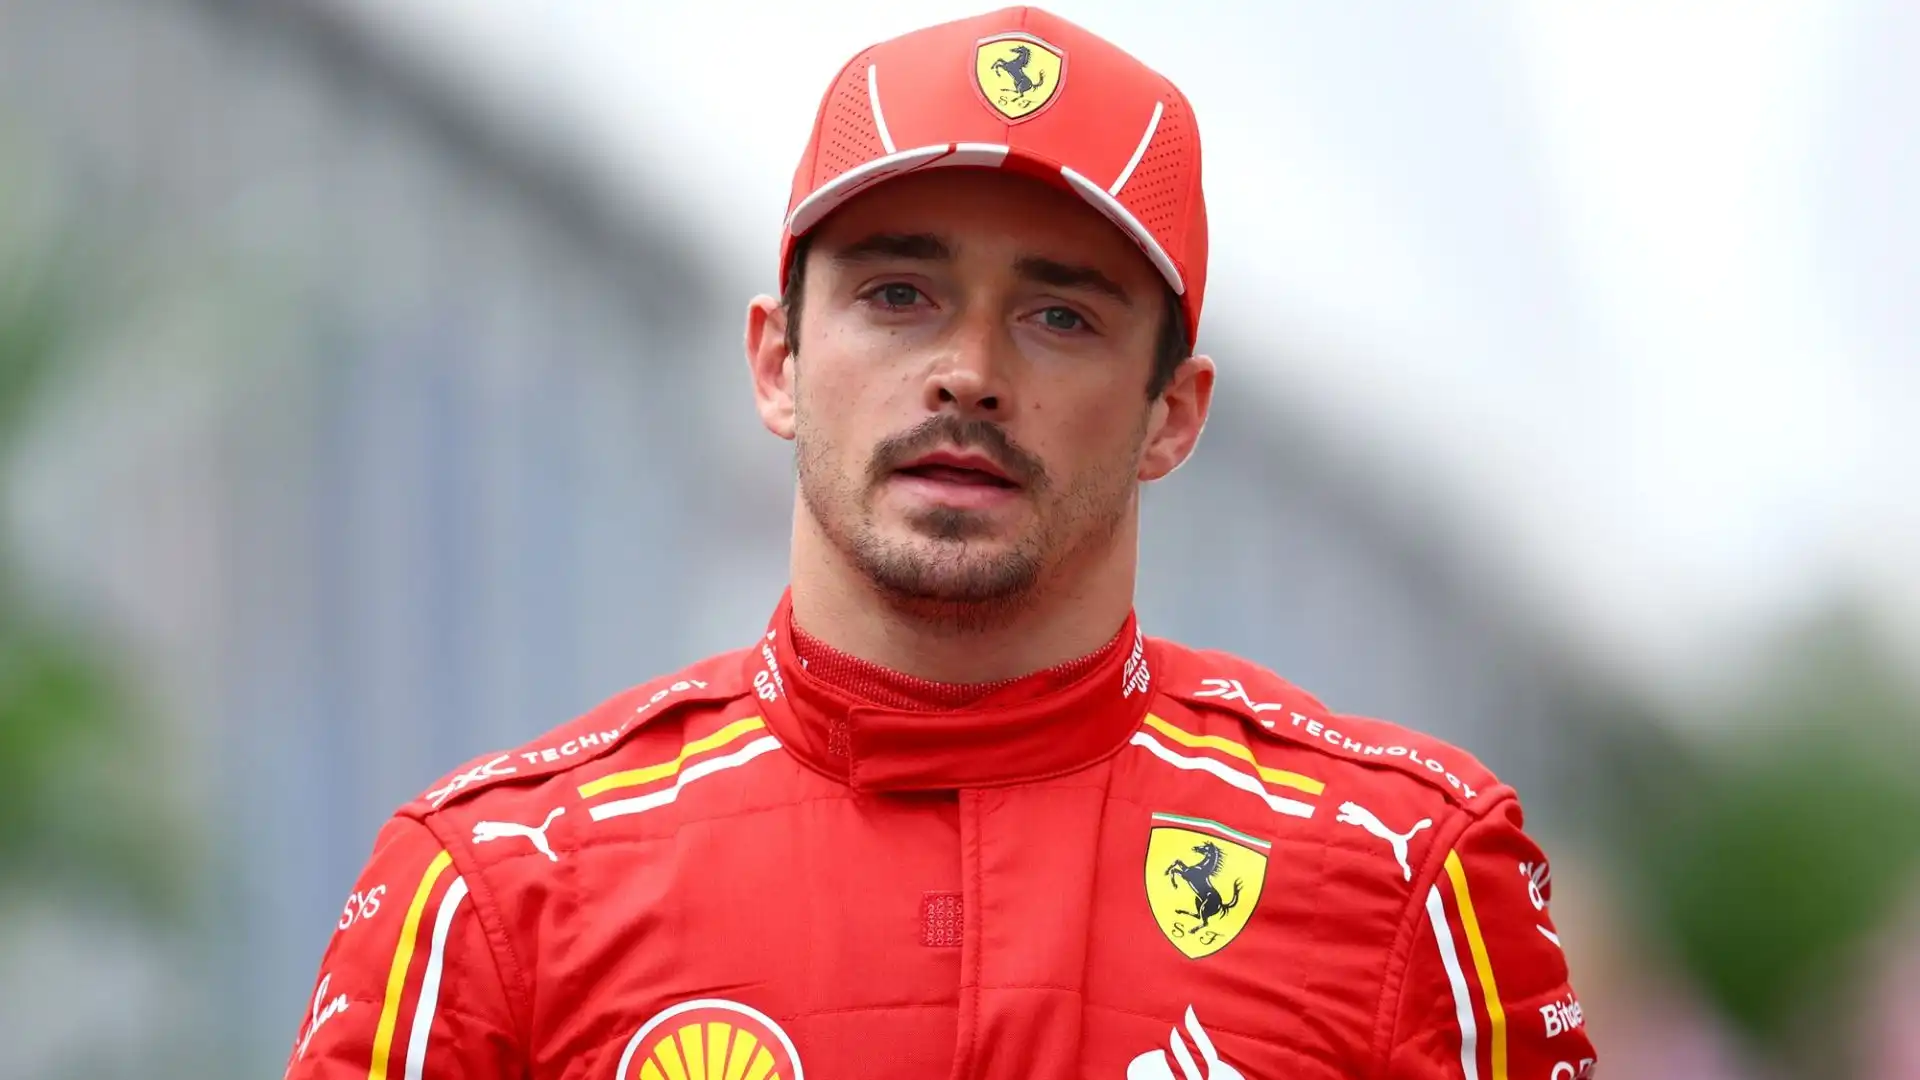 Il pilota della Ferrari Charles Leclerc è inconsolabile dopo essere stato eletto miglior pilota del Gp del Giappone